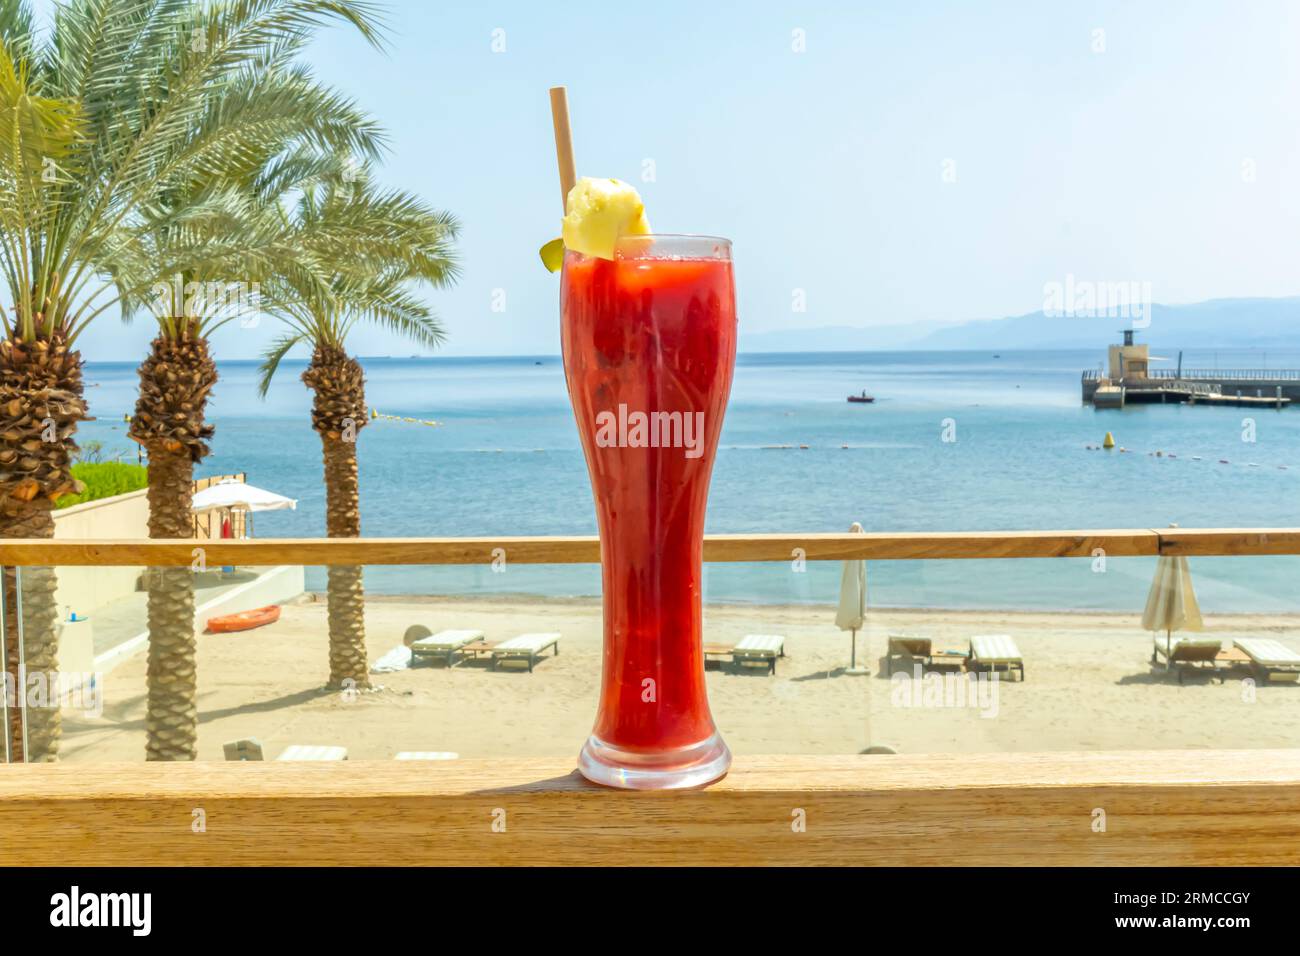 Verre de cocktail smoothie au jus de fraise au citron contre un paysage tropical, mer d'Arabie. Concept de boissons des stations de plages tropicales Banque D'Images